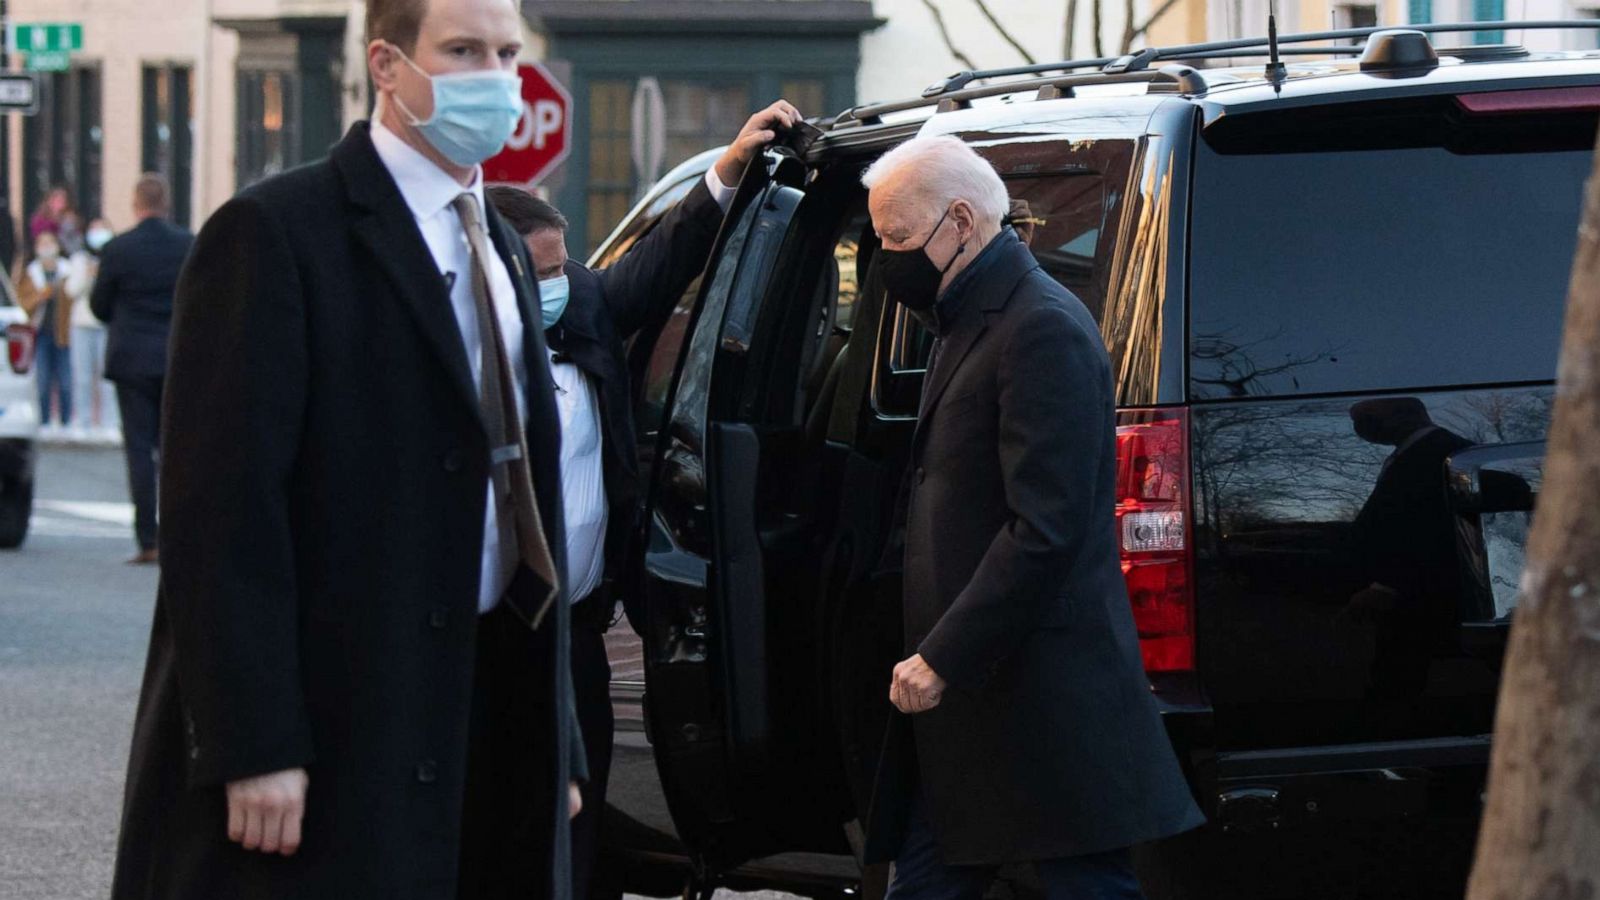 Các nhân viên mật vụ bảo vệ ông Biden khi Tổng thống Mỹ tới thăm một nhà thờ ở Washington D.C vào ngày 6/3/2021.